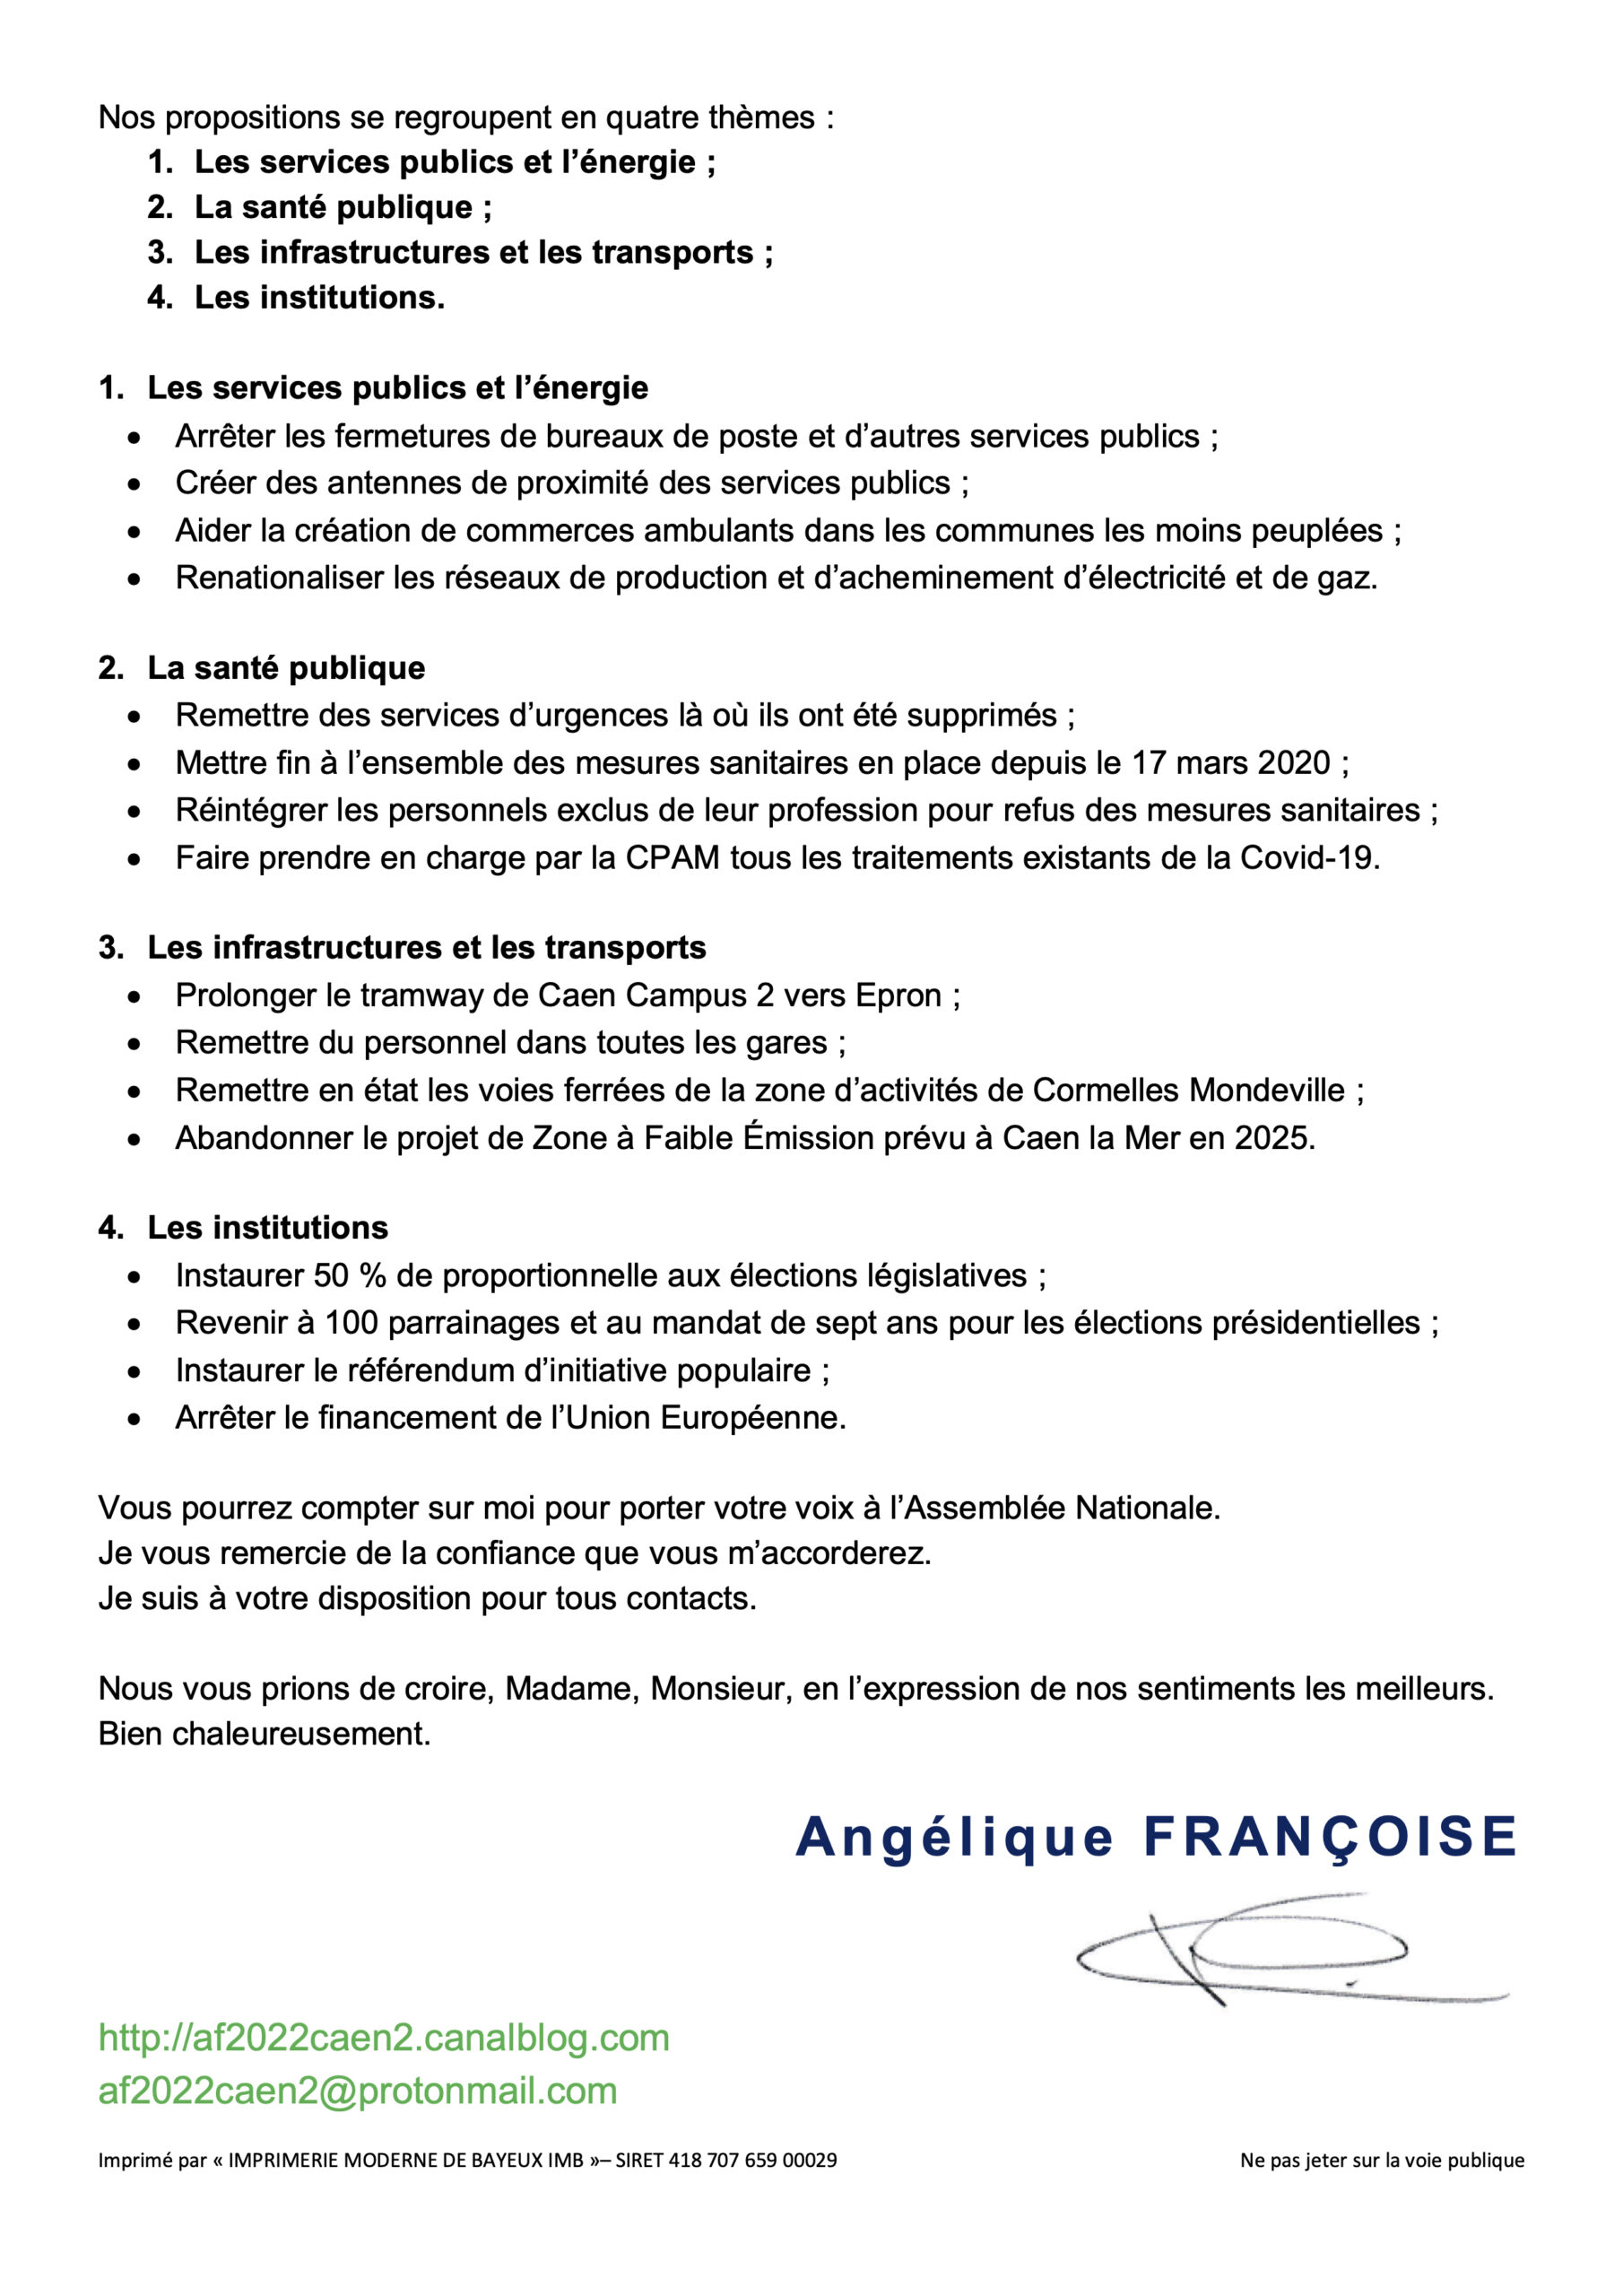 angelique-francoise-pf2